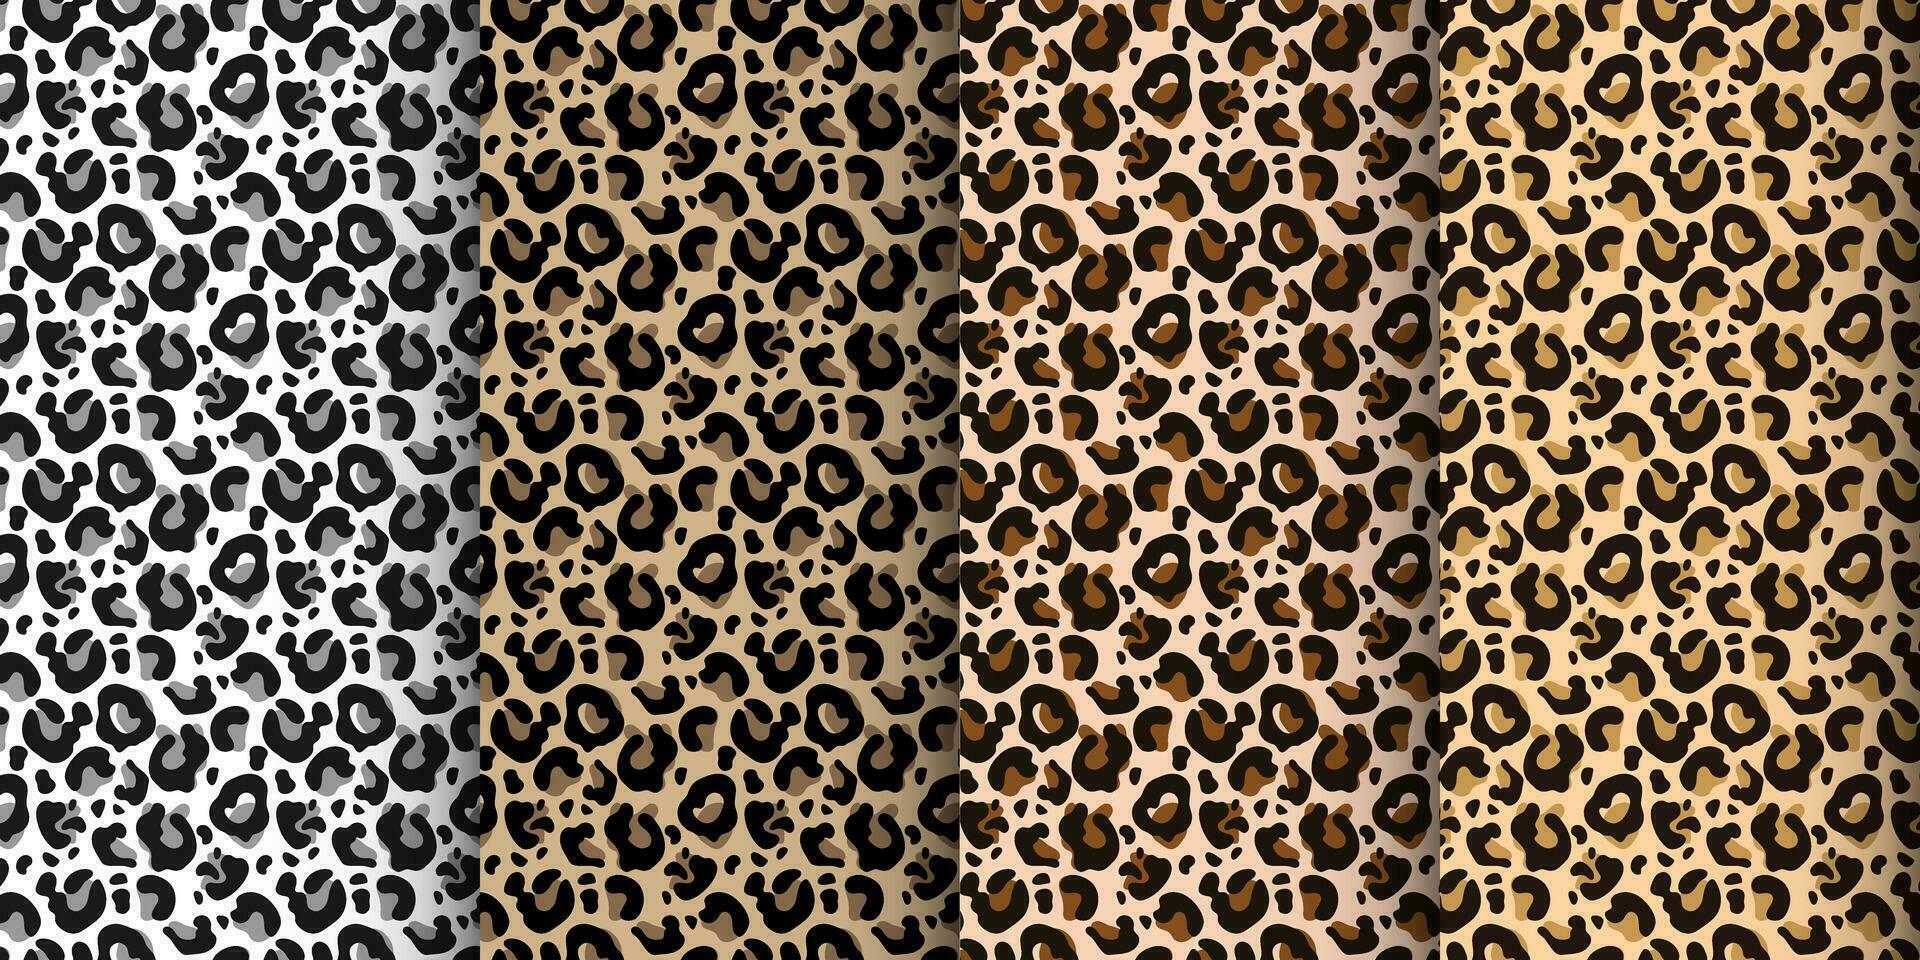 leopardo, tigre desatado padrão, abstrato selvagem animal pele fundo. conjunto do leopardo texturas, Projeto para fundos, impressões, têxteis. vetor